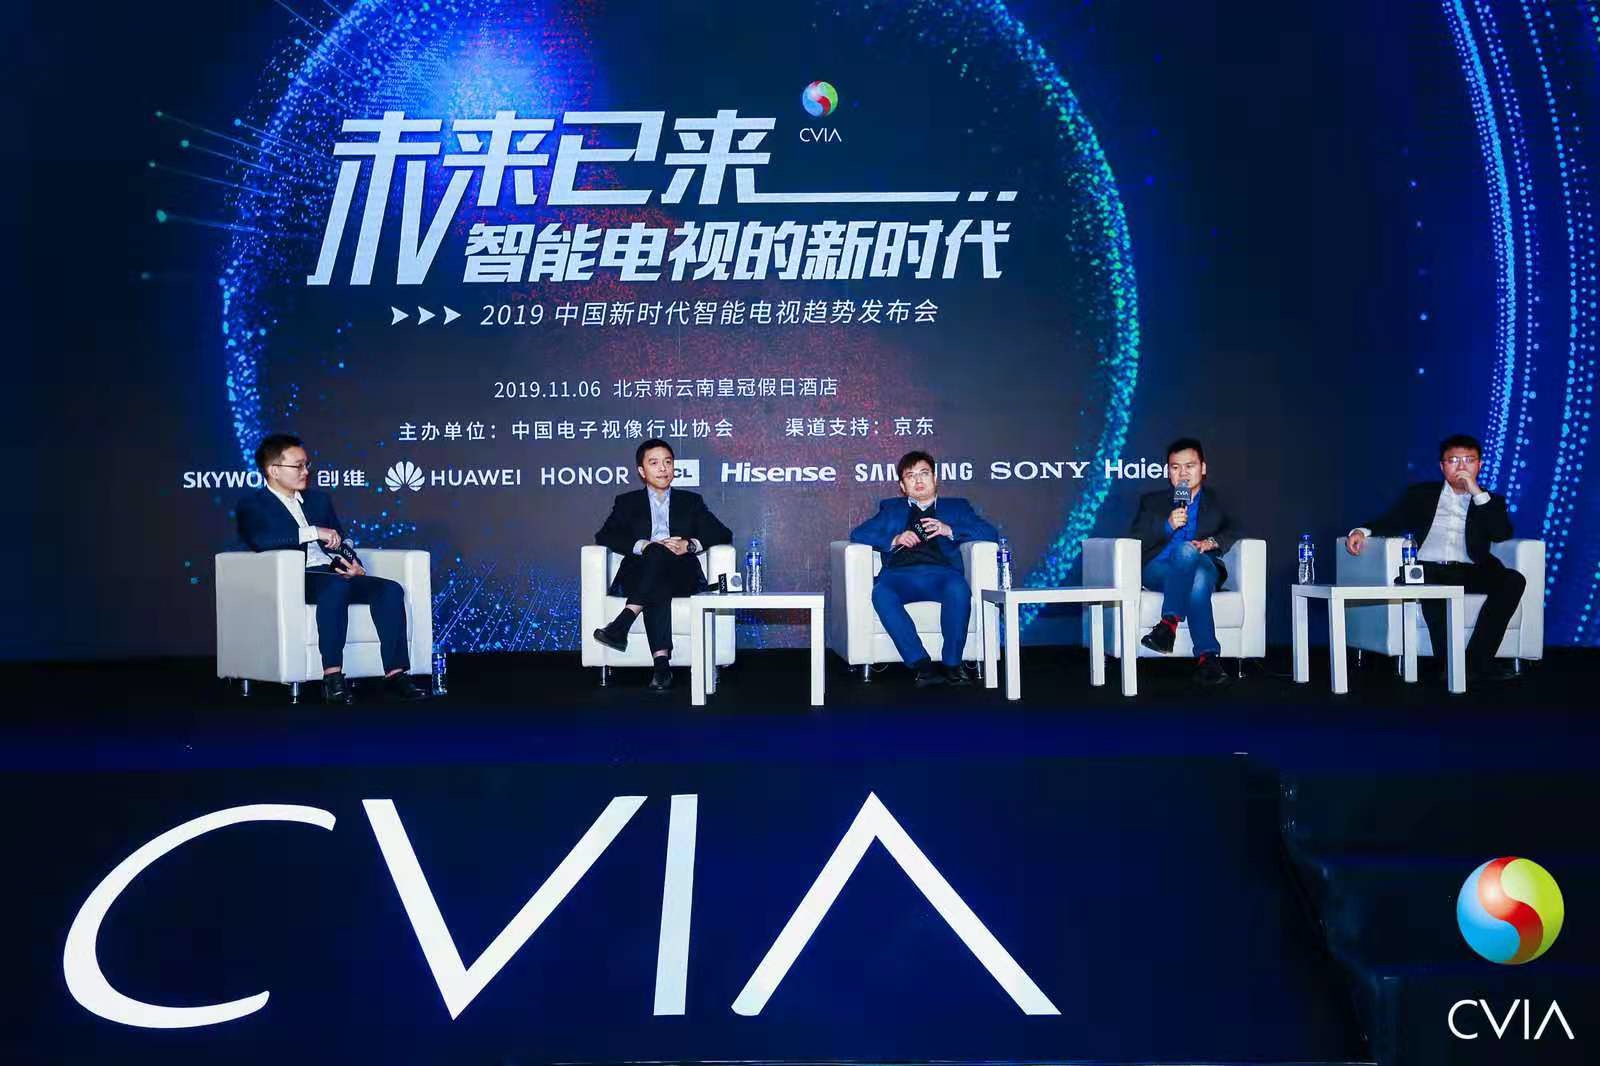 2019中国新时代智能电视趋势发布会顺利召开 智能公会